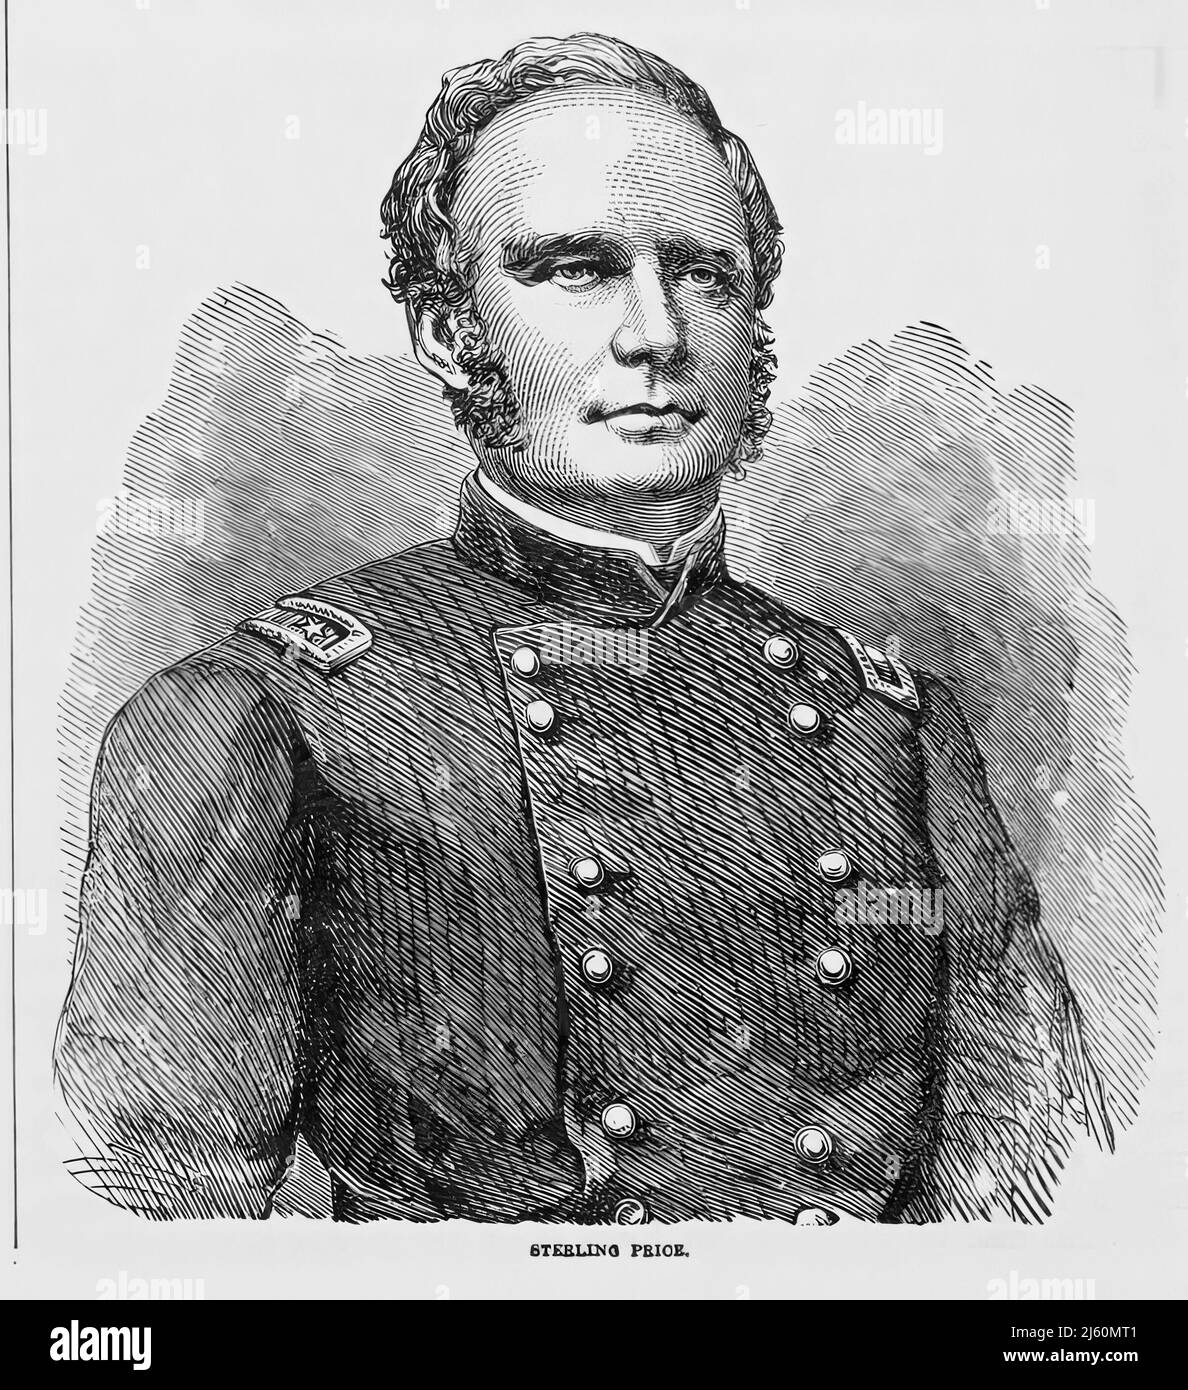 Portrait de Sterling Price, général de l'armée confédérée dans la guerre civile américaine. illustration du siècle 19th Banque D'Images